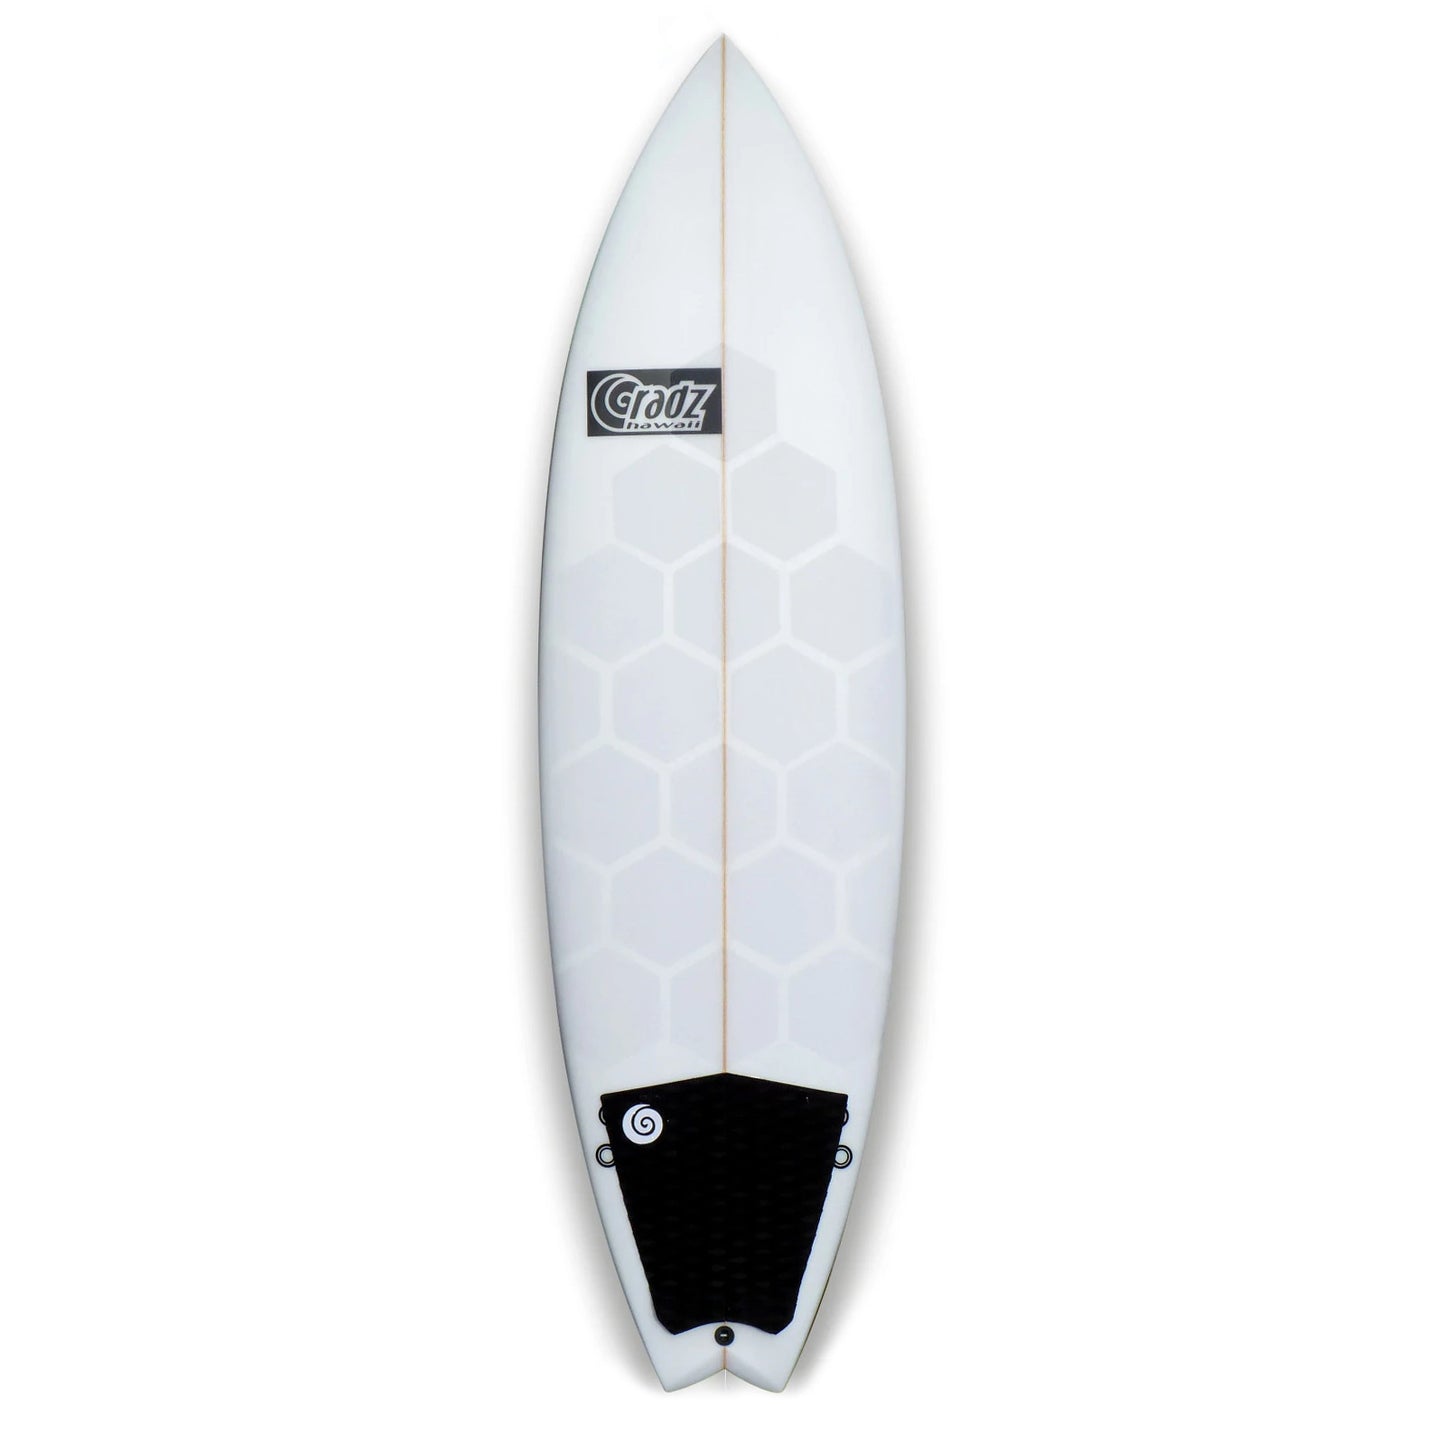 Installierte RSPro Hexa Traction Clear Edition auf einen Surfboard vor weißem Hintergrund.